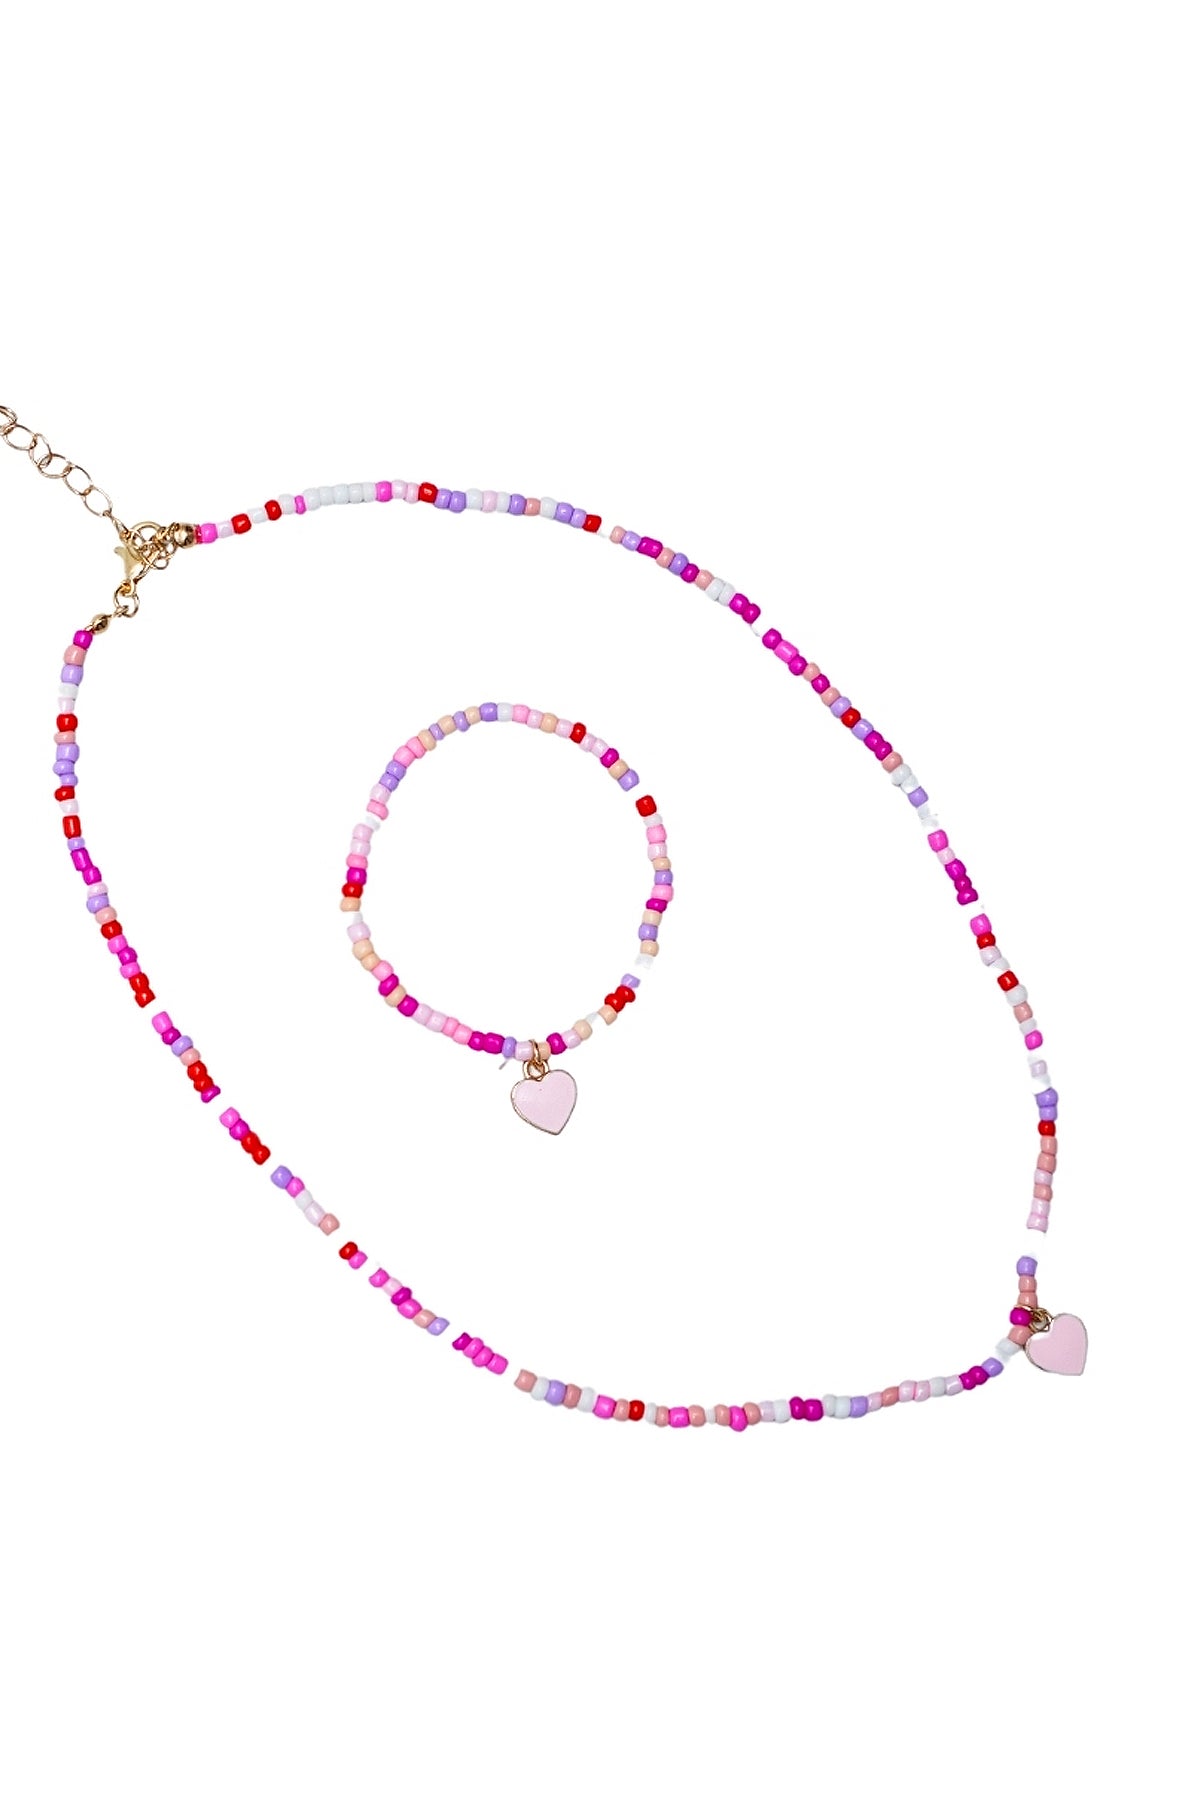 Necklace & Bracelet Set (GBN-154)